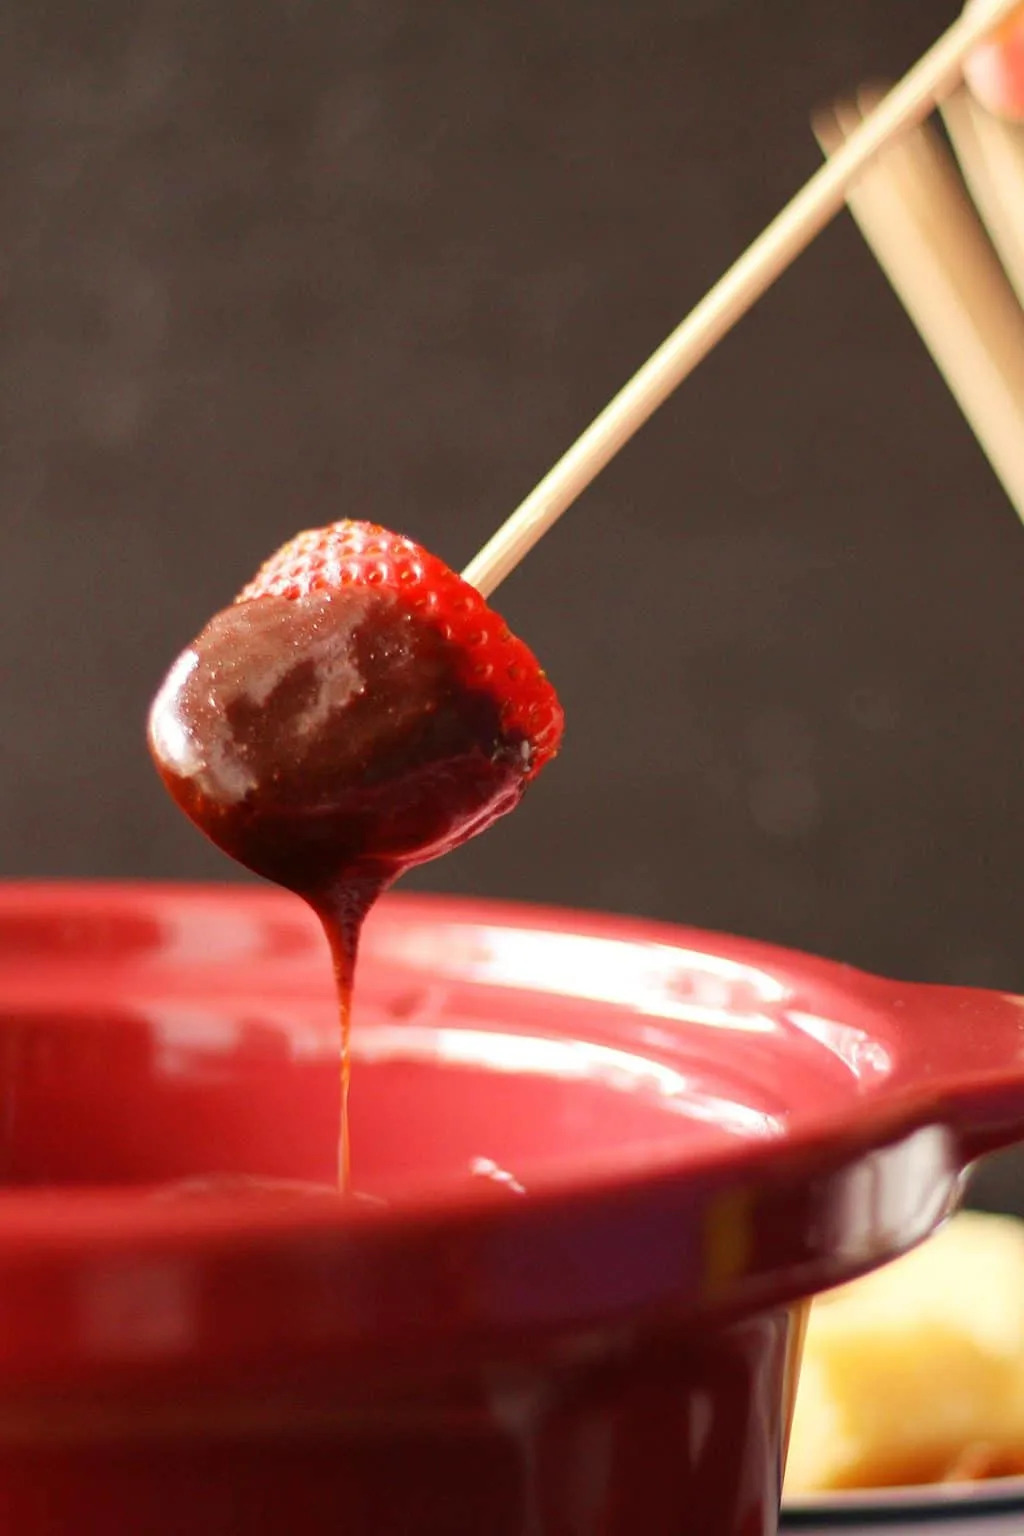 https://www.honeyandbirch.com/wp-content/uploads/2014/02/slow-cooker-chocolate-fondue-8.jpg.webp